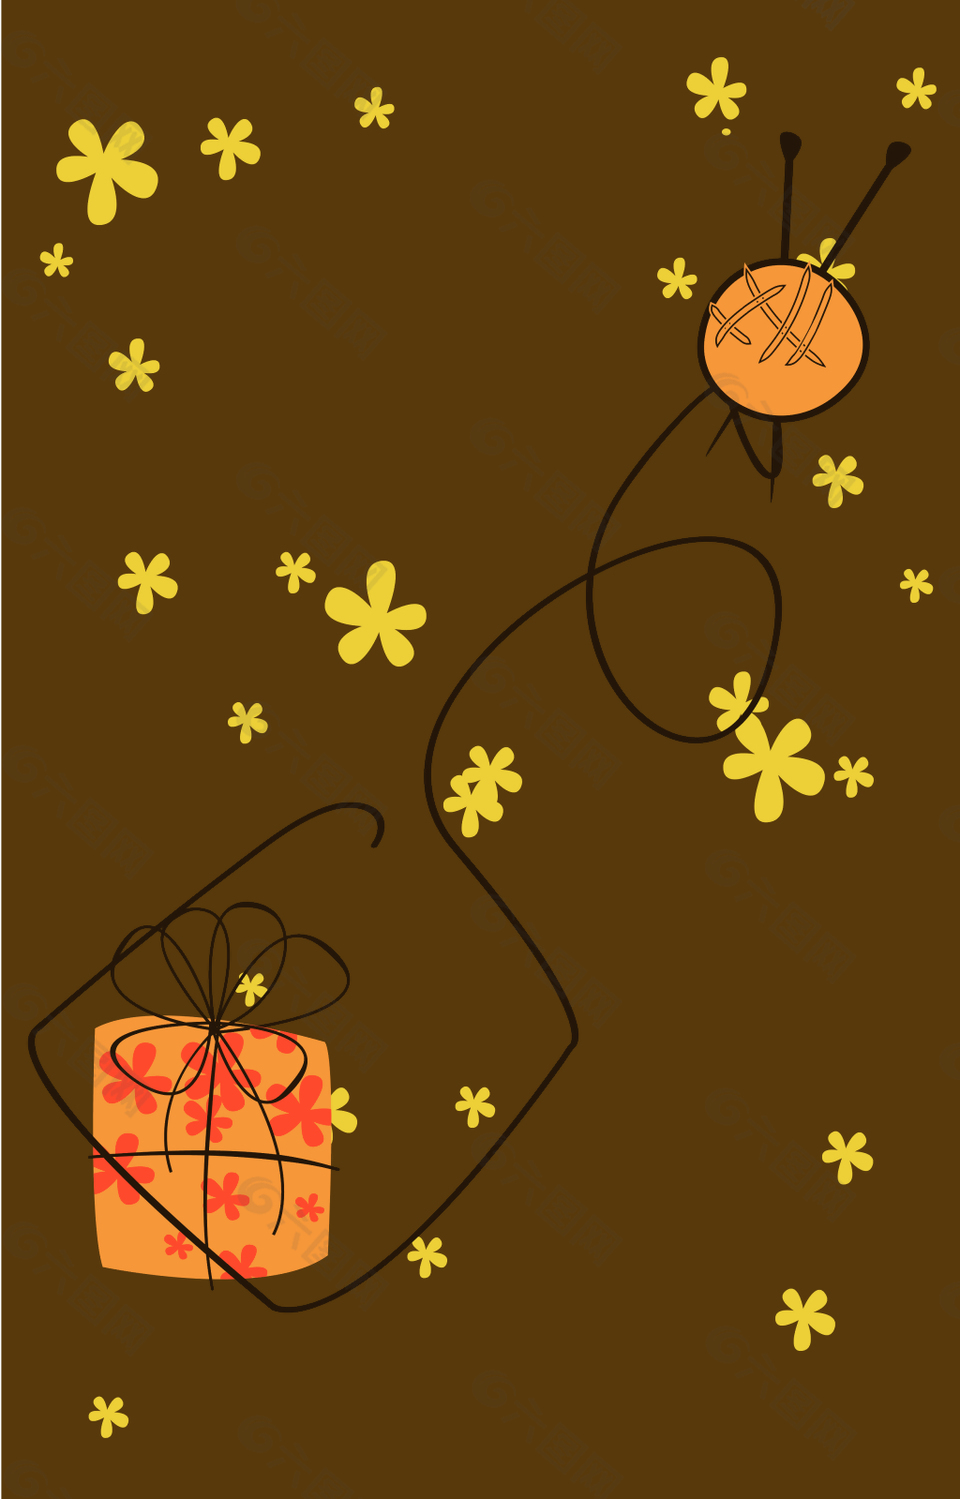 棕色礼盒和圆球背景素材